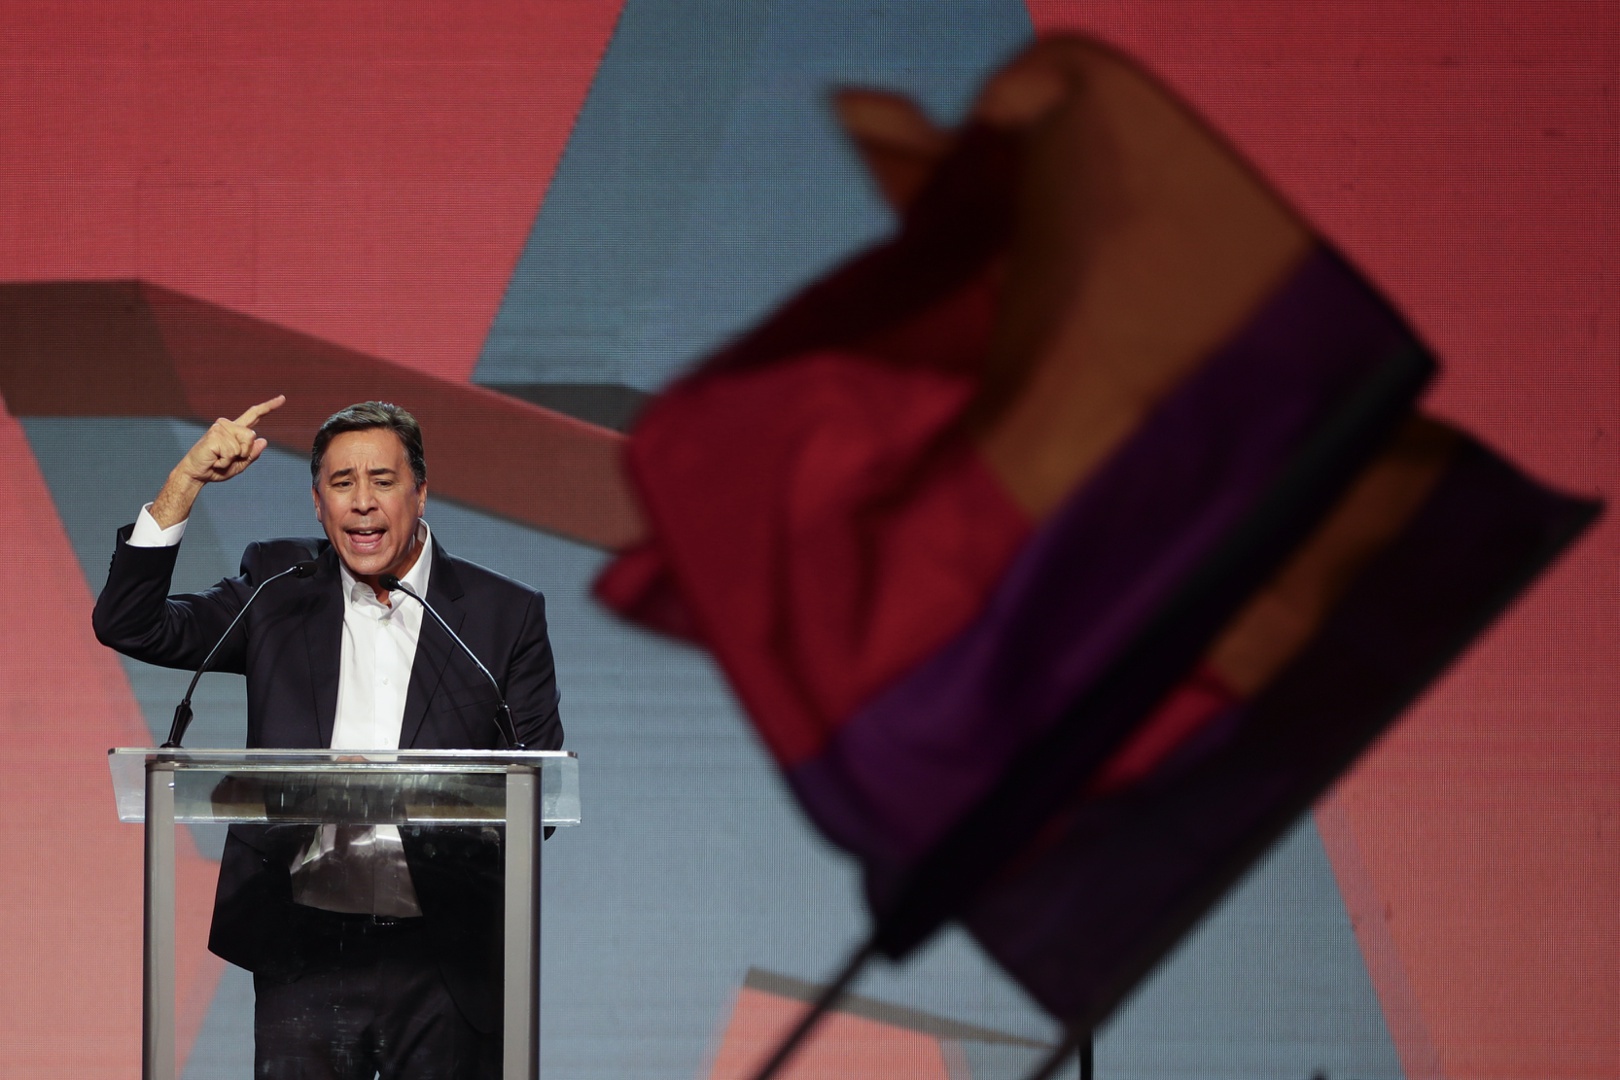 el candidato melitón arrocha pide el voto para el expresidente torrijos en las elecciones de panamá